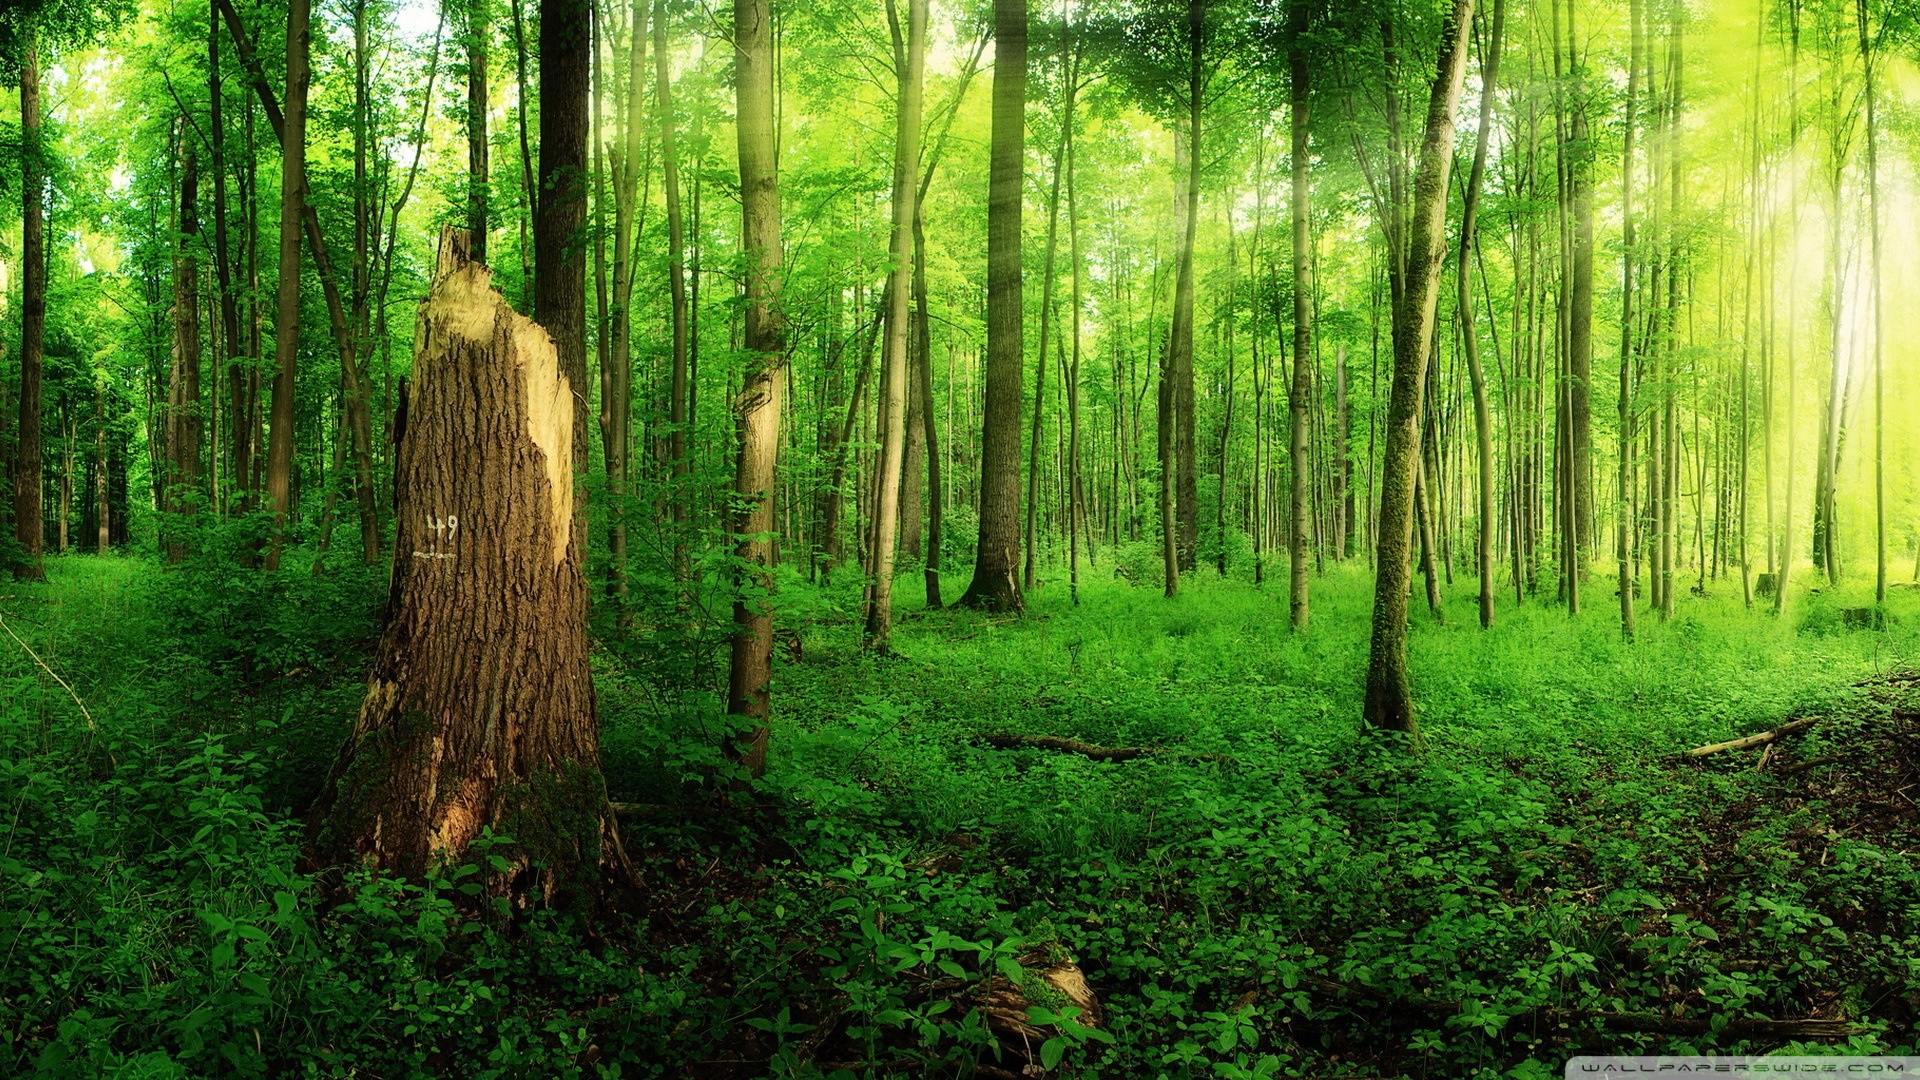 高清晰大自然绿色树林风景桌面壁纸